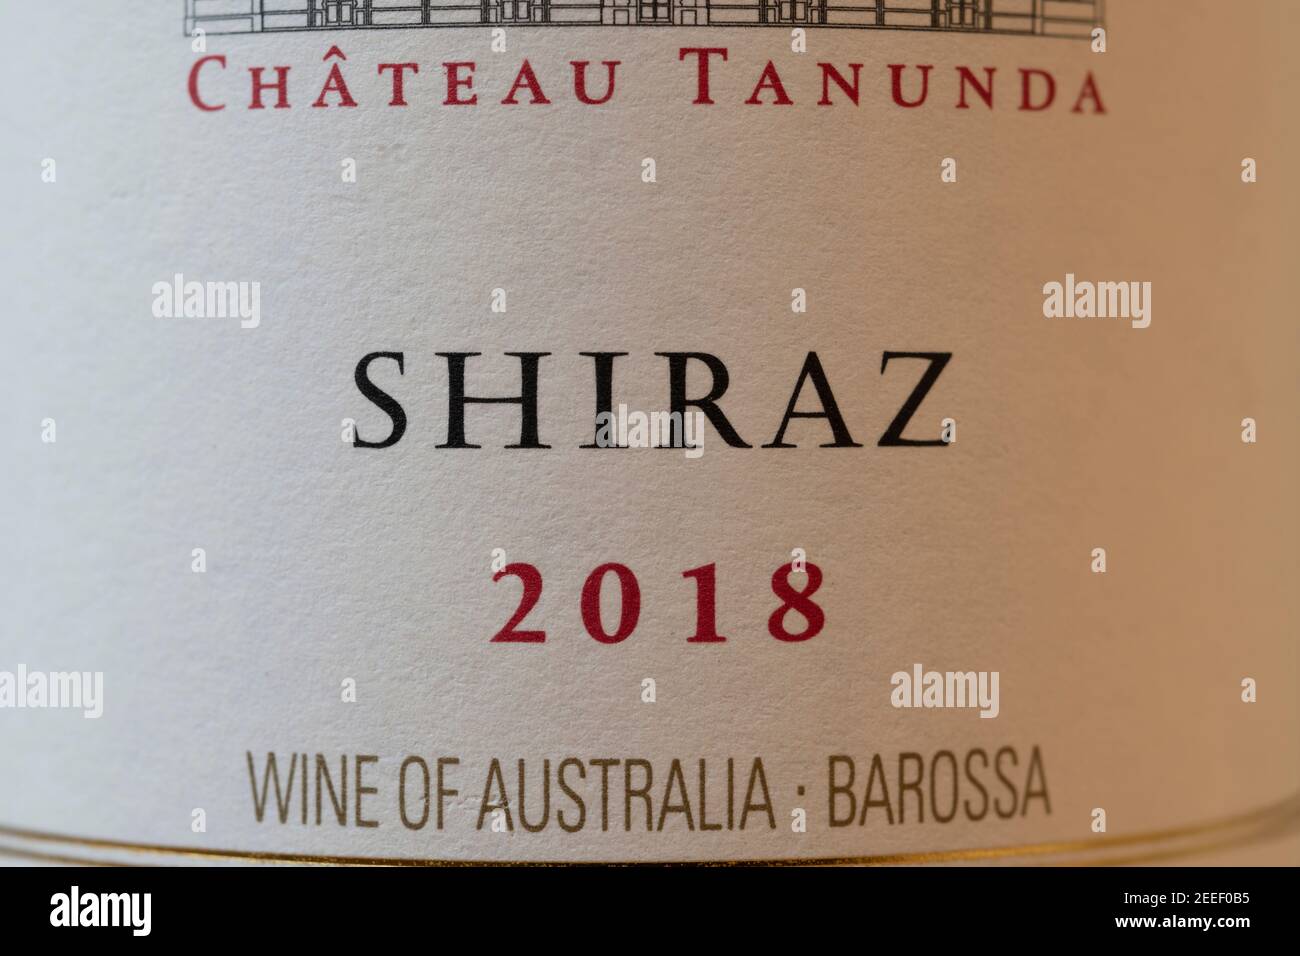 Château Tanunda Shiraz 2018 étiquette de bouteille de vin australienne en gros plan Banque D'Images